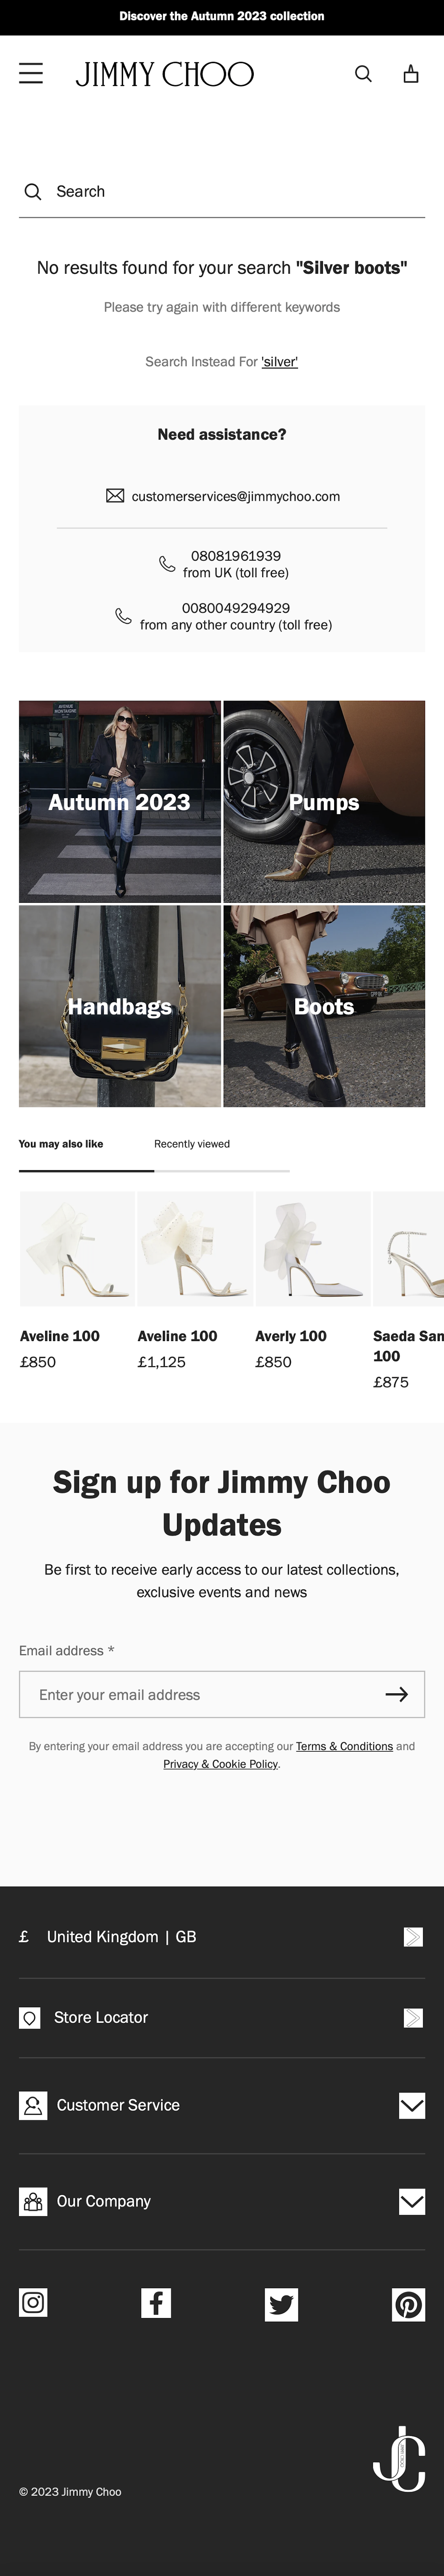 Mobile screenshot of Jimmy Choo